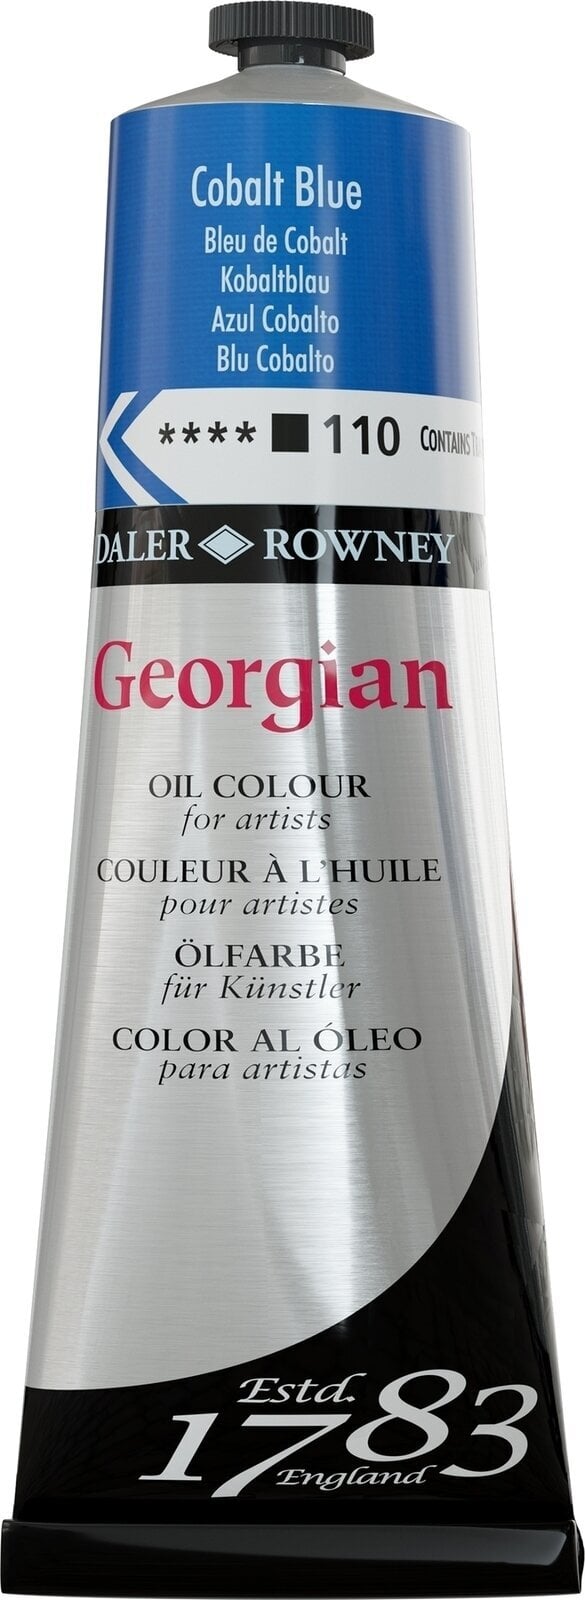 Oil colour Daler Rowney Georgian Oil Paint Cobalt Blue 225 ml 1 pc